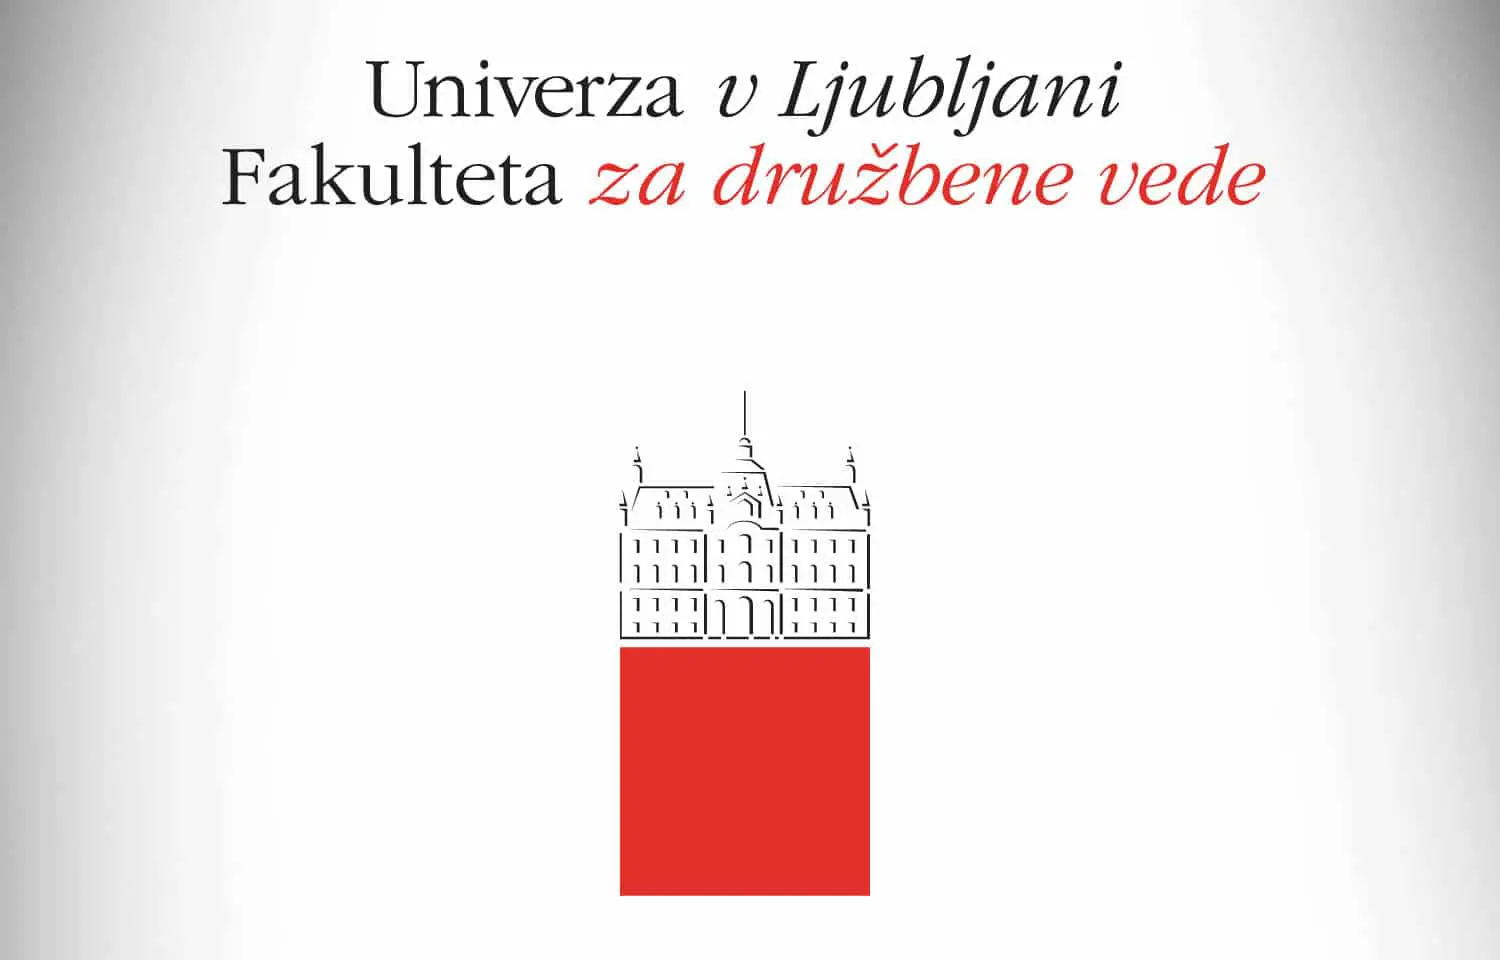 Oblikovanje tiskovin za Fakulteto za družbene vede v Ljubljani.